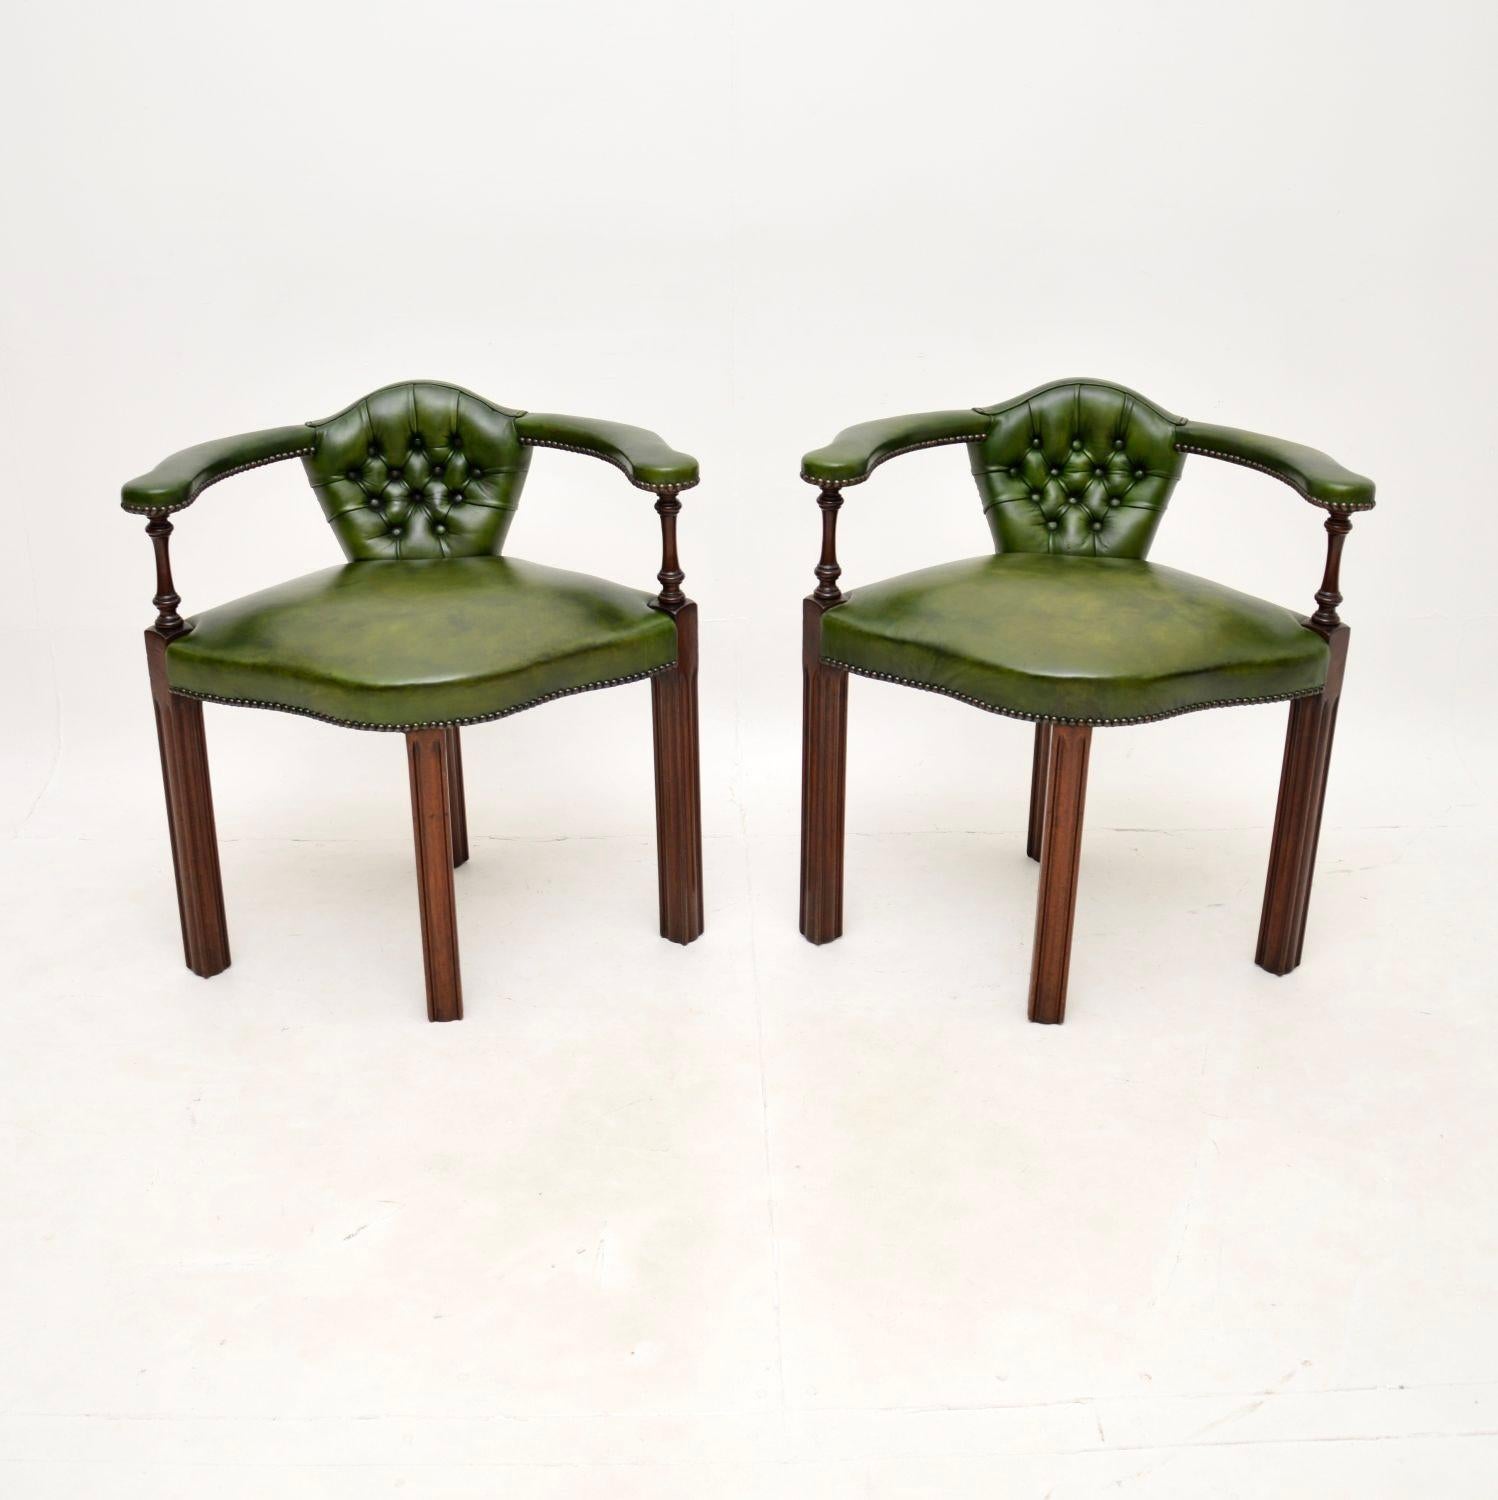 Ein hervorragendes Paar antiker Sessel im georgianischen Stil. Sie wurden in England hergestellt und stammen etwa aus den 1950-60er Jahren.

Die Qualität ist hervorragend, sie sind schön gestaltet und können als Eckstühle oder als Beistellstühle